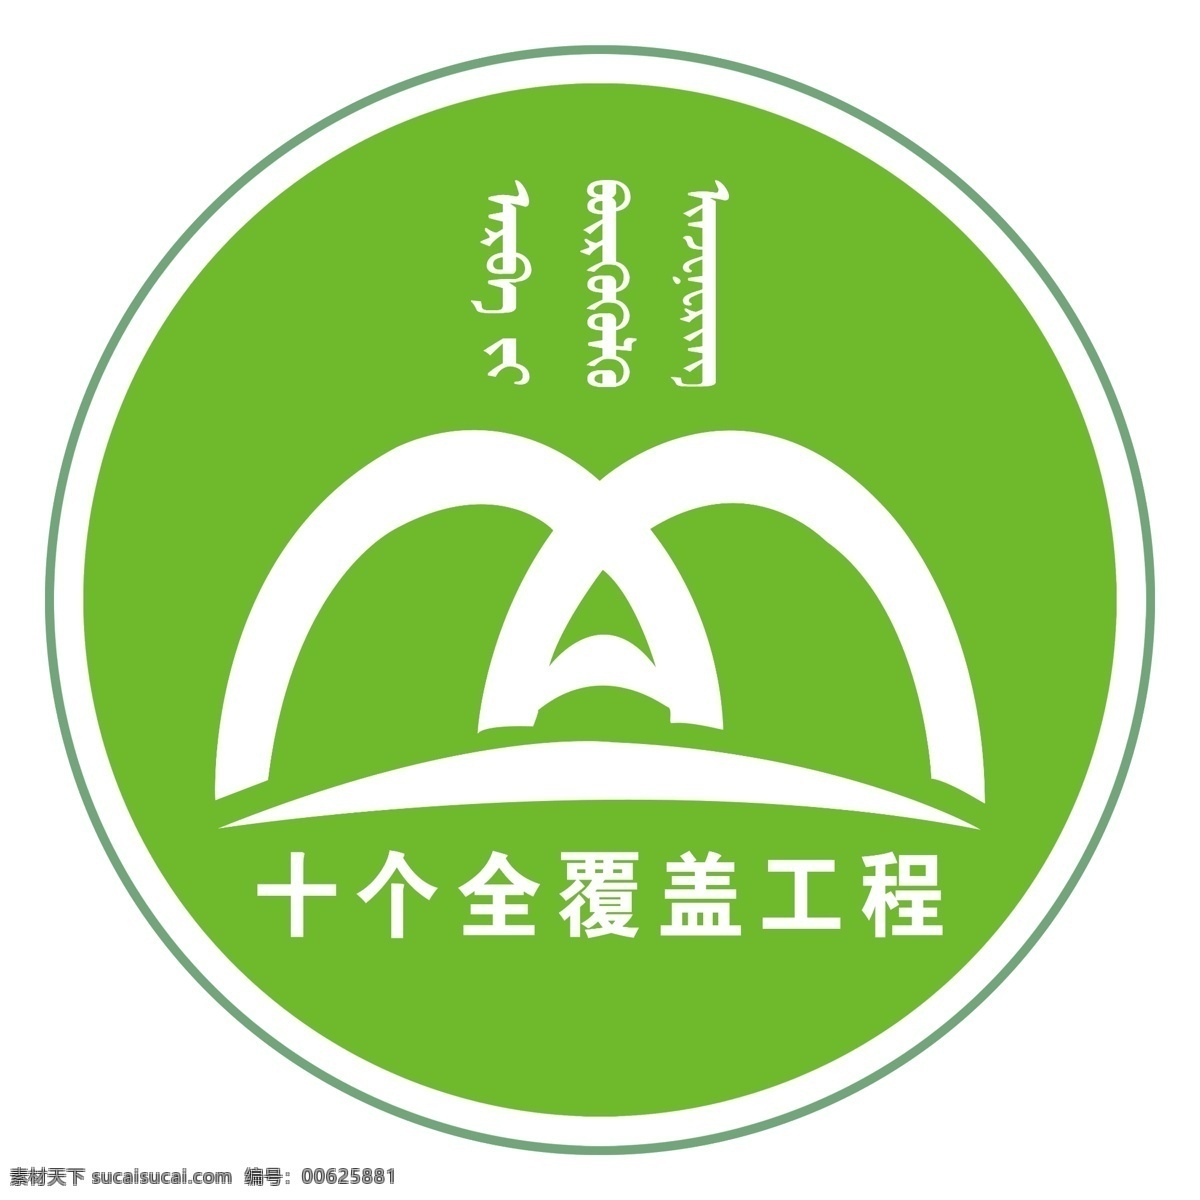 十 全 覆盖 工程 logo 十个全覆盖 国家 蒙文 内蒙古 圆形 白色